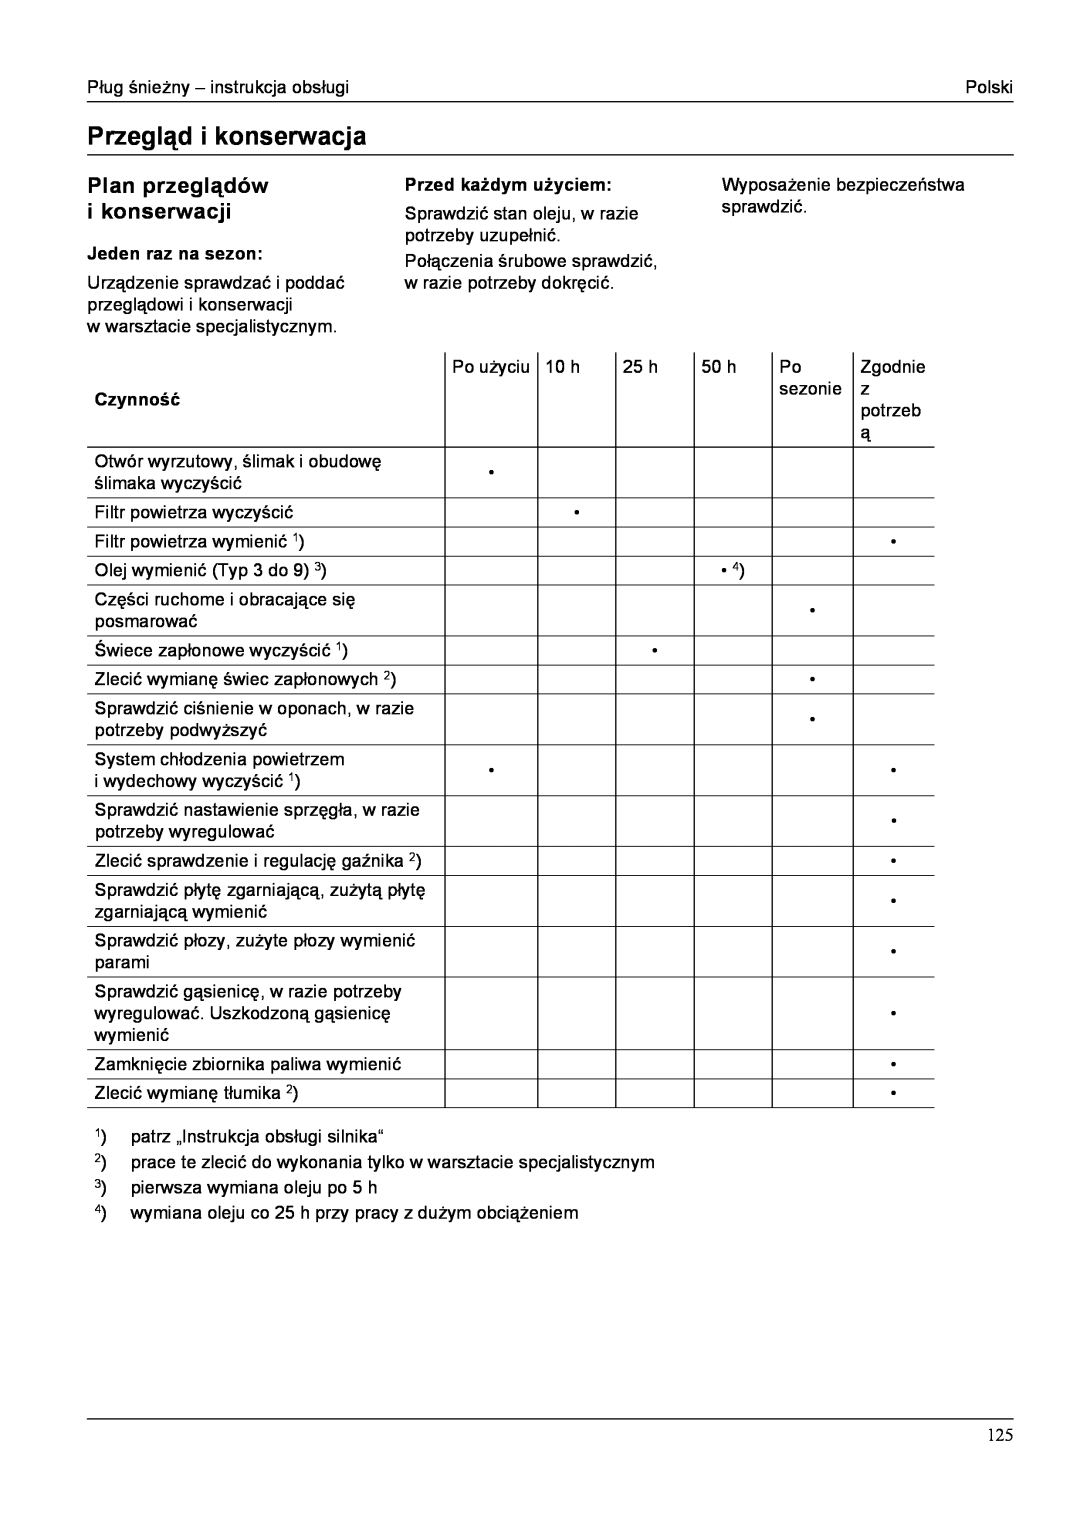 Karcher STH 10.66 C manual Przegląd i konserwacja, Plan przeglądów, i konserwacji, Przed każdym użyciem, Jeden raz na sezon 